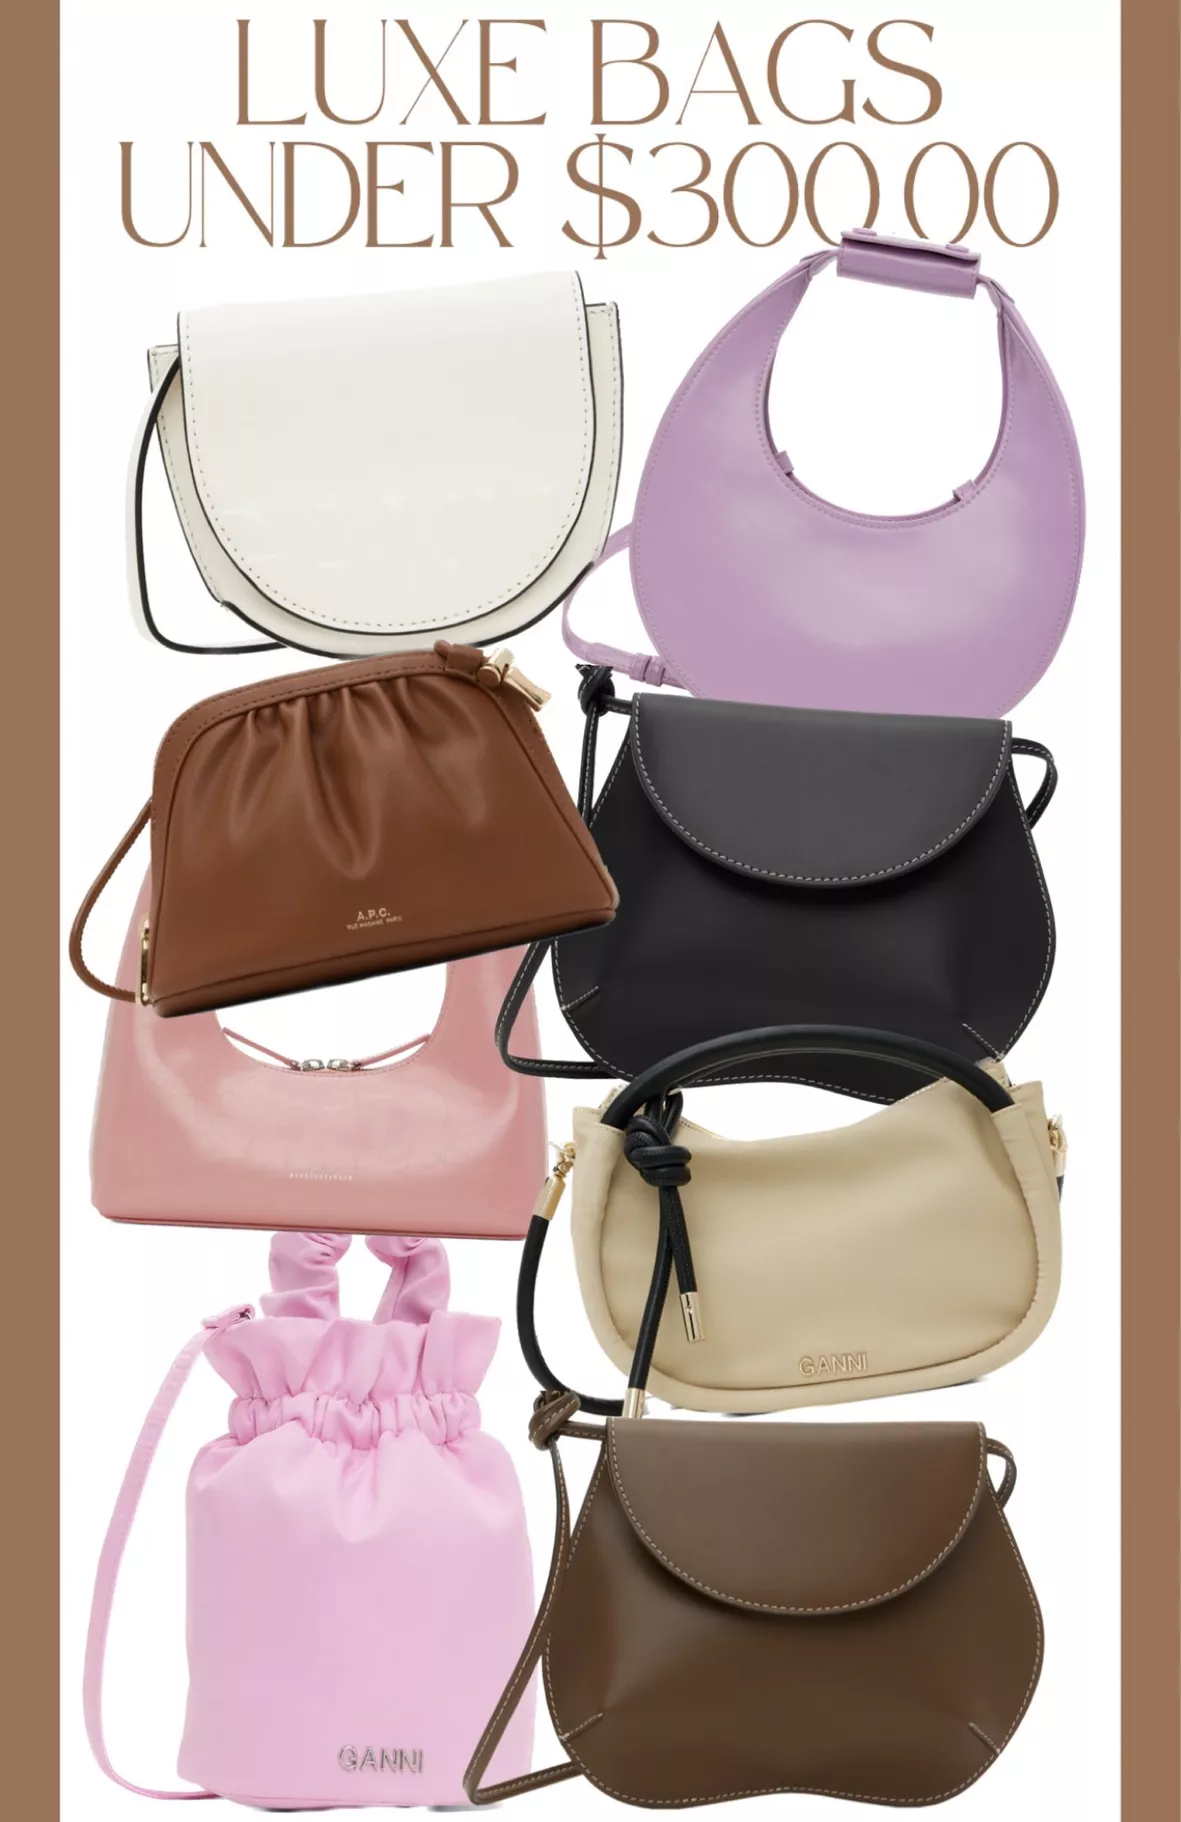 Marge Sherwood Pink Mini Crinkle Shoulder Bag for Women